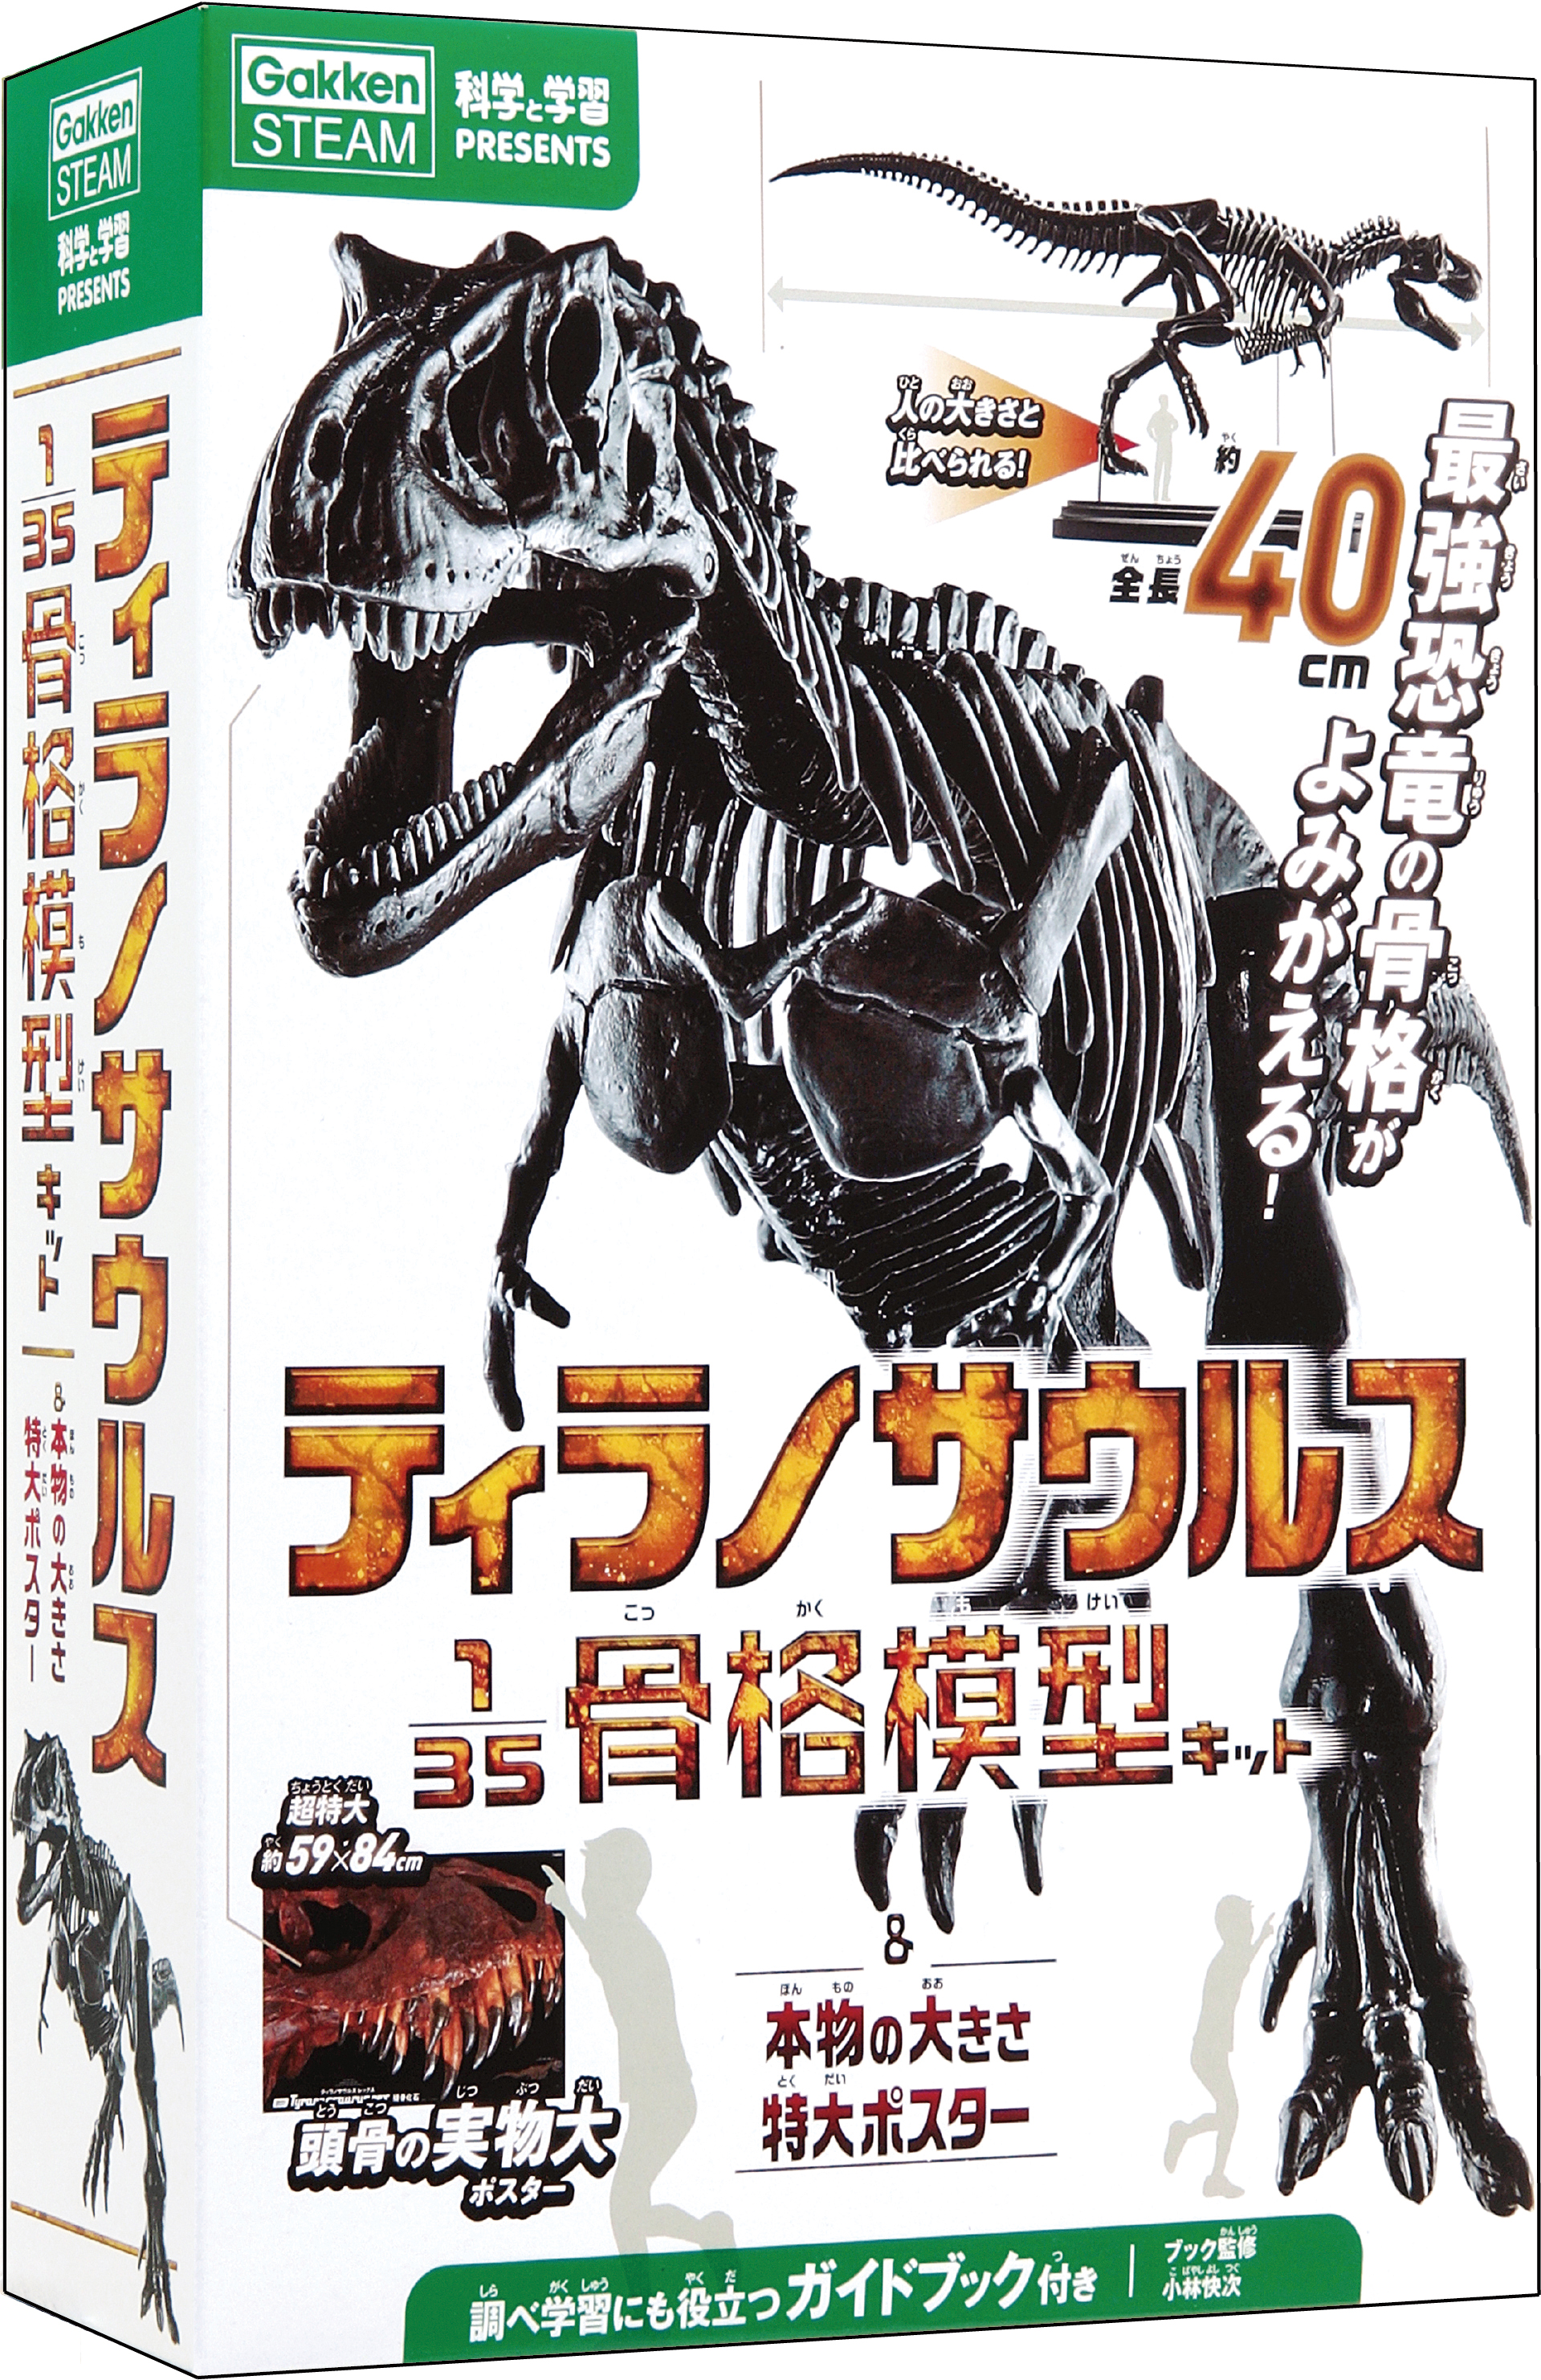 『科学と学習PRESENTS ティラノサウルス135骨格模型キット&本物の大きさ特大ポスター』書影